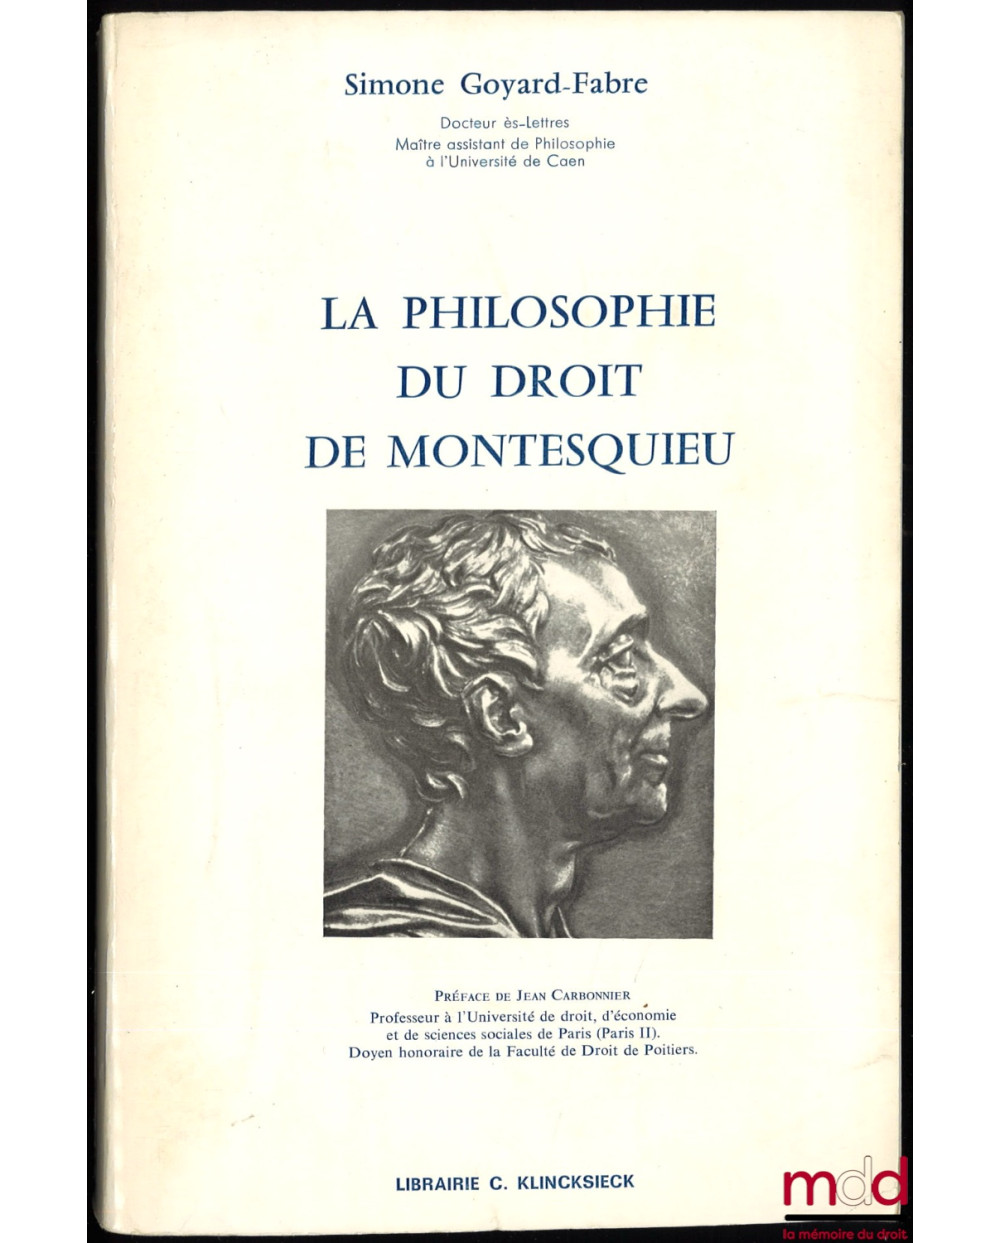 LA PHILOSOPHIE DU DROIT DE MONTESQUIEU, 2e éd. revue et corrigée, Préface de Jean Carbonnier